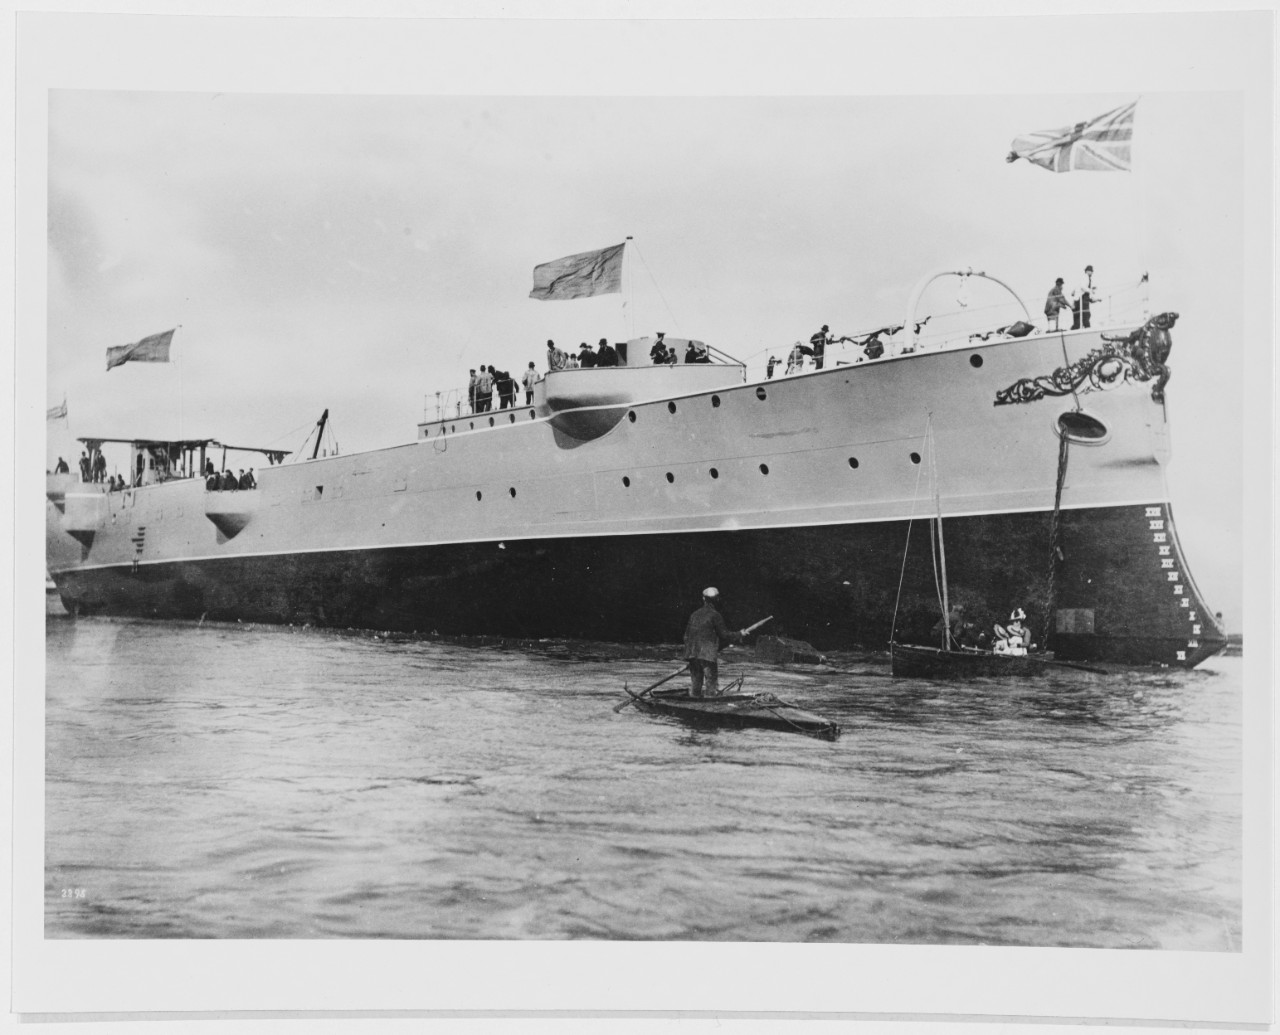 MELPOMENE (British Cruiser, 1888-1905)